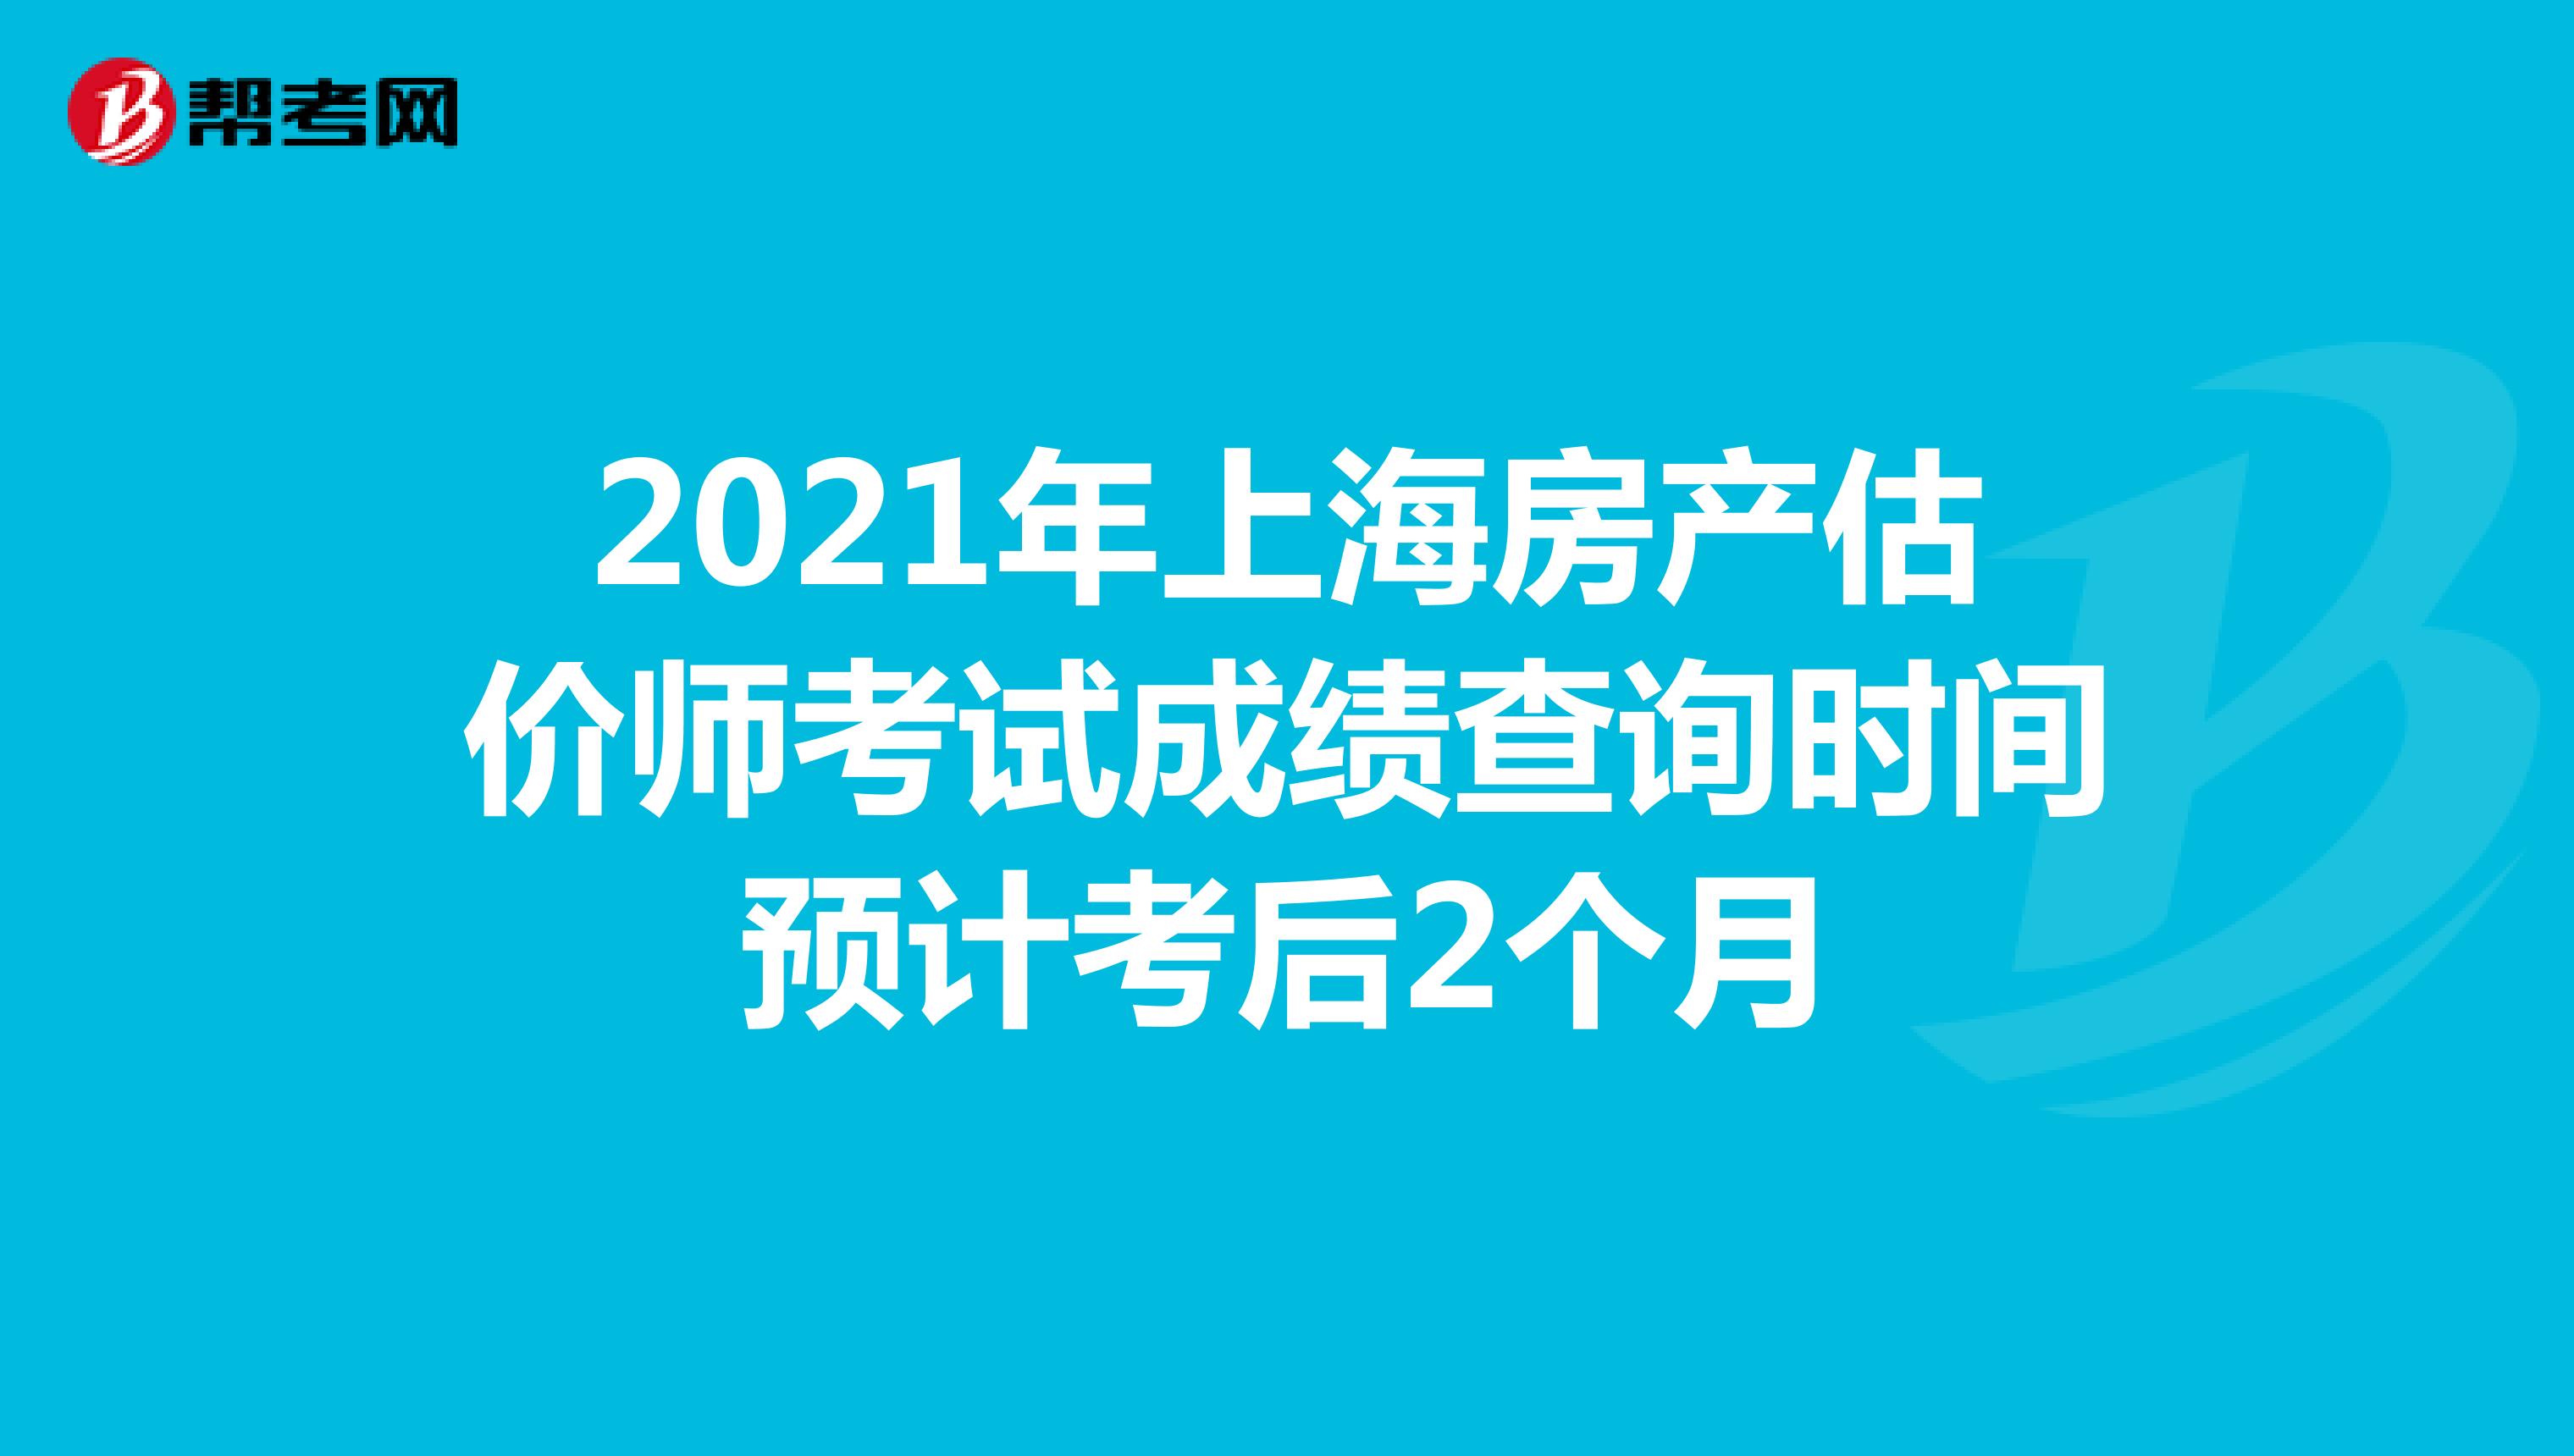 2021年上海房产估价师考试成绩查询时间预计考后2个月